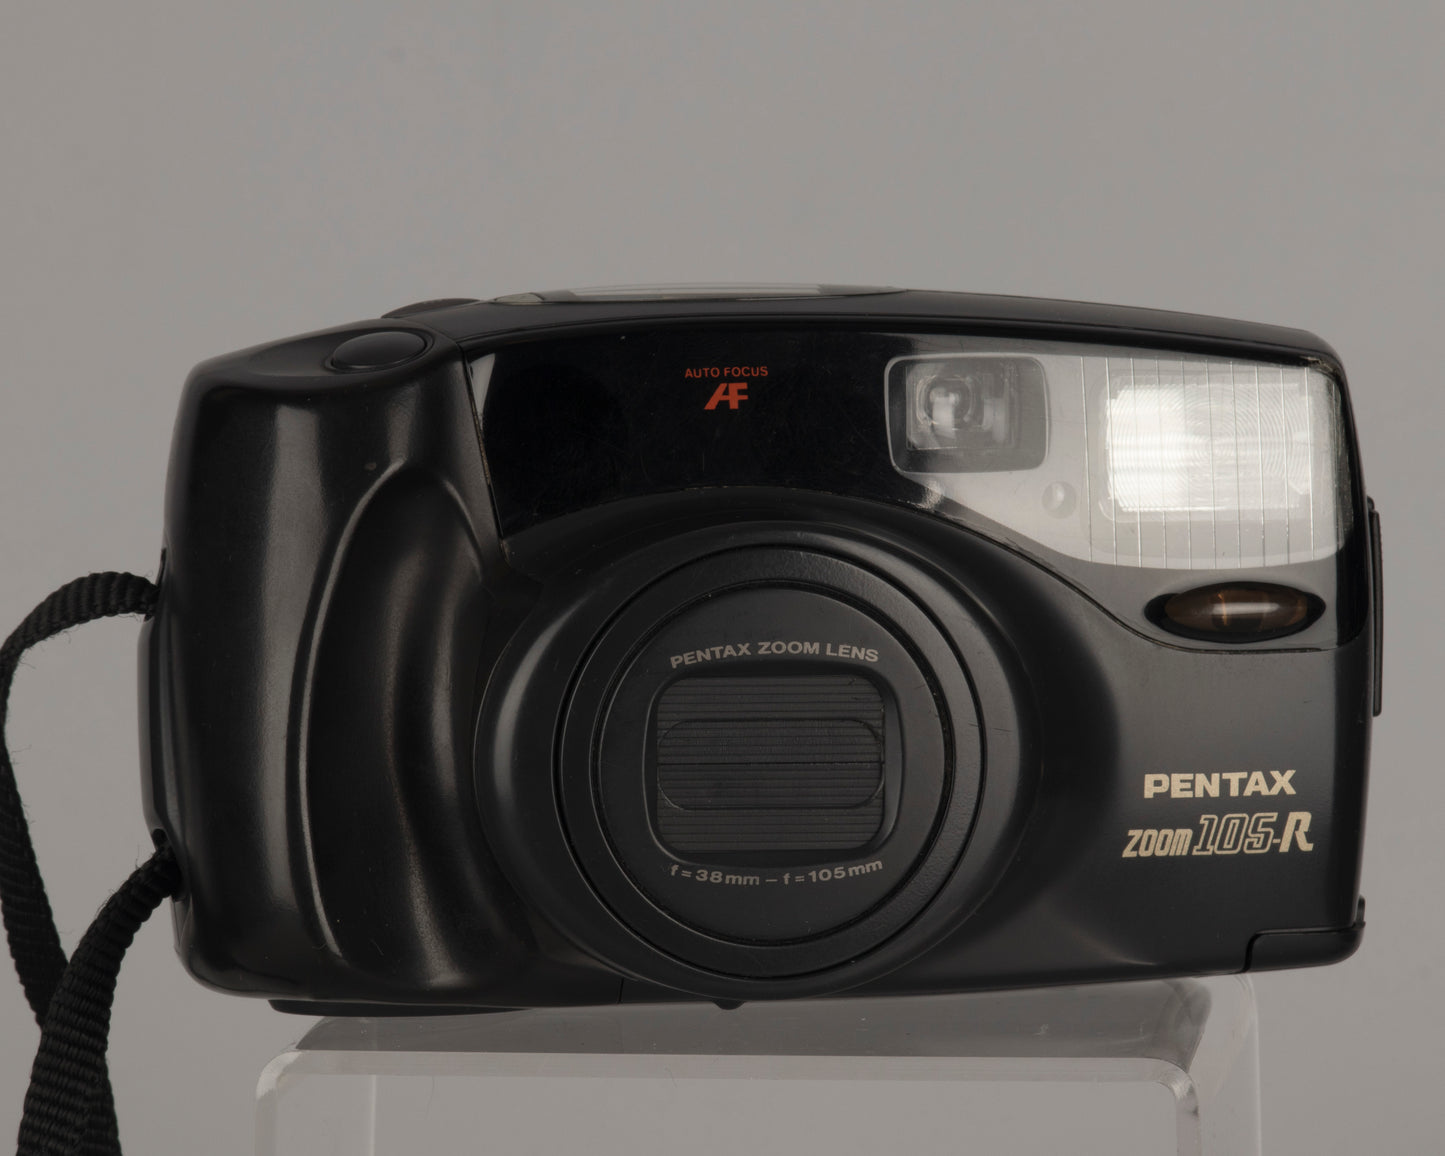 Appareil photo Pentax Zoom 105-R 35 mm